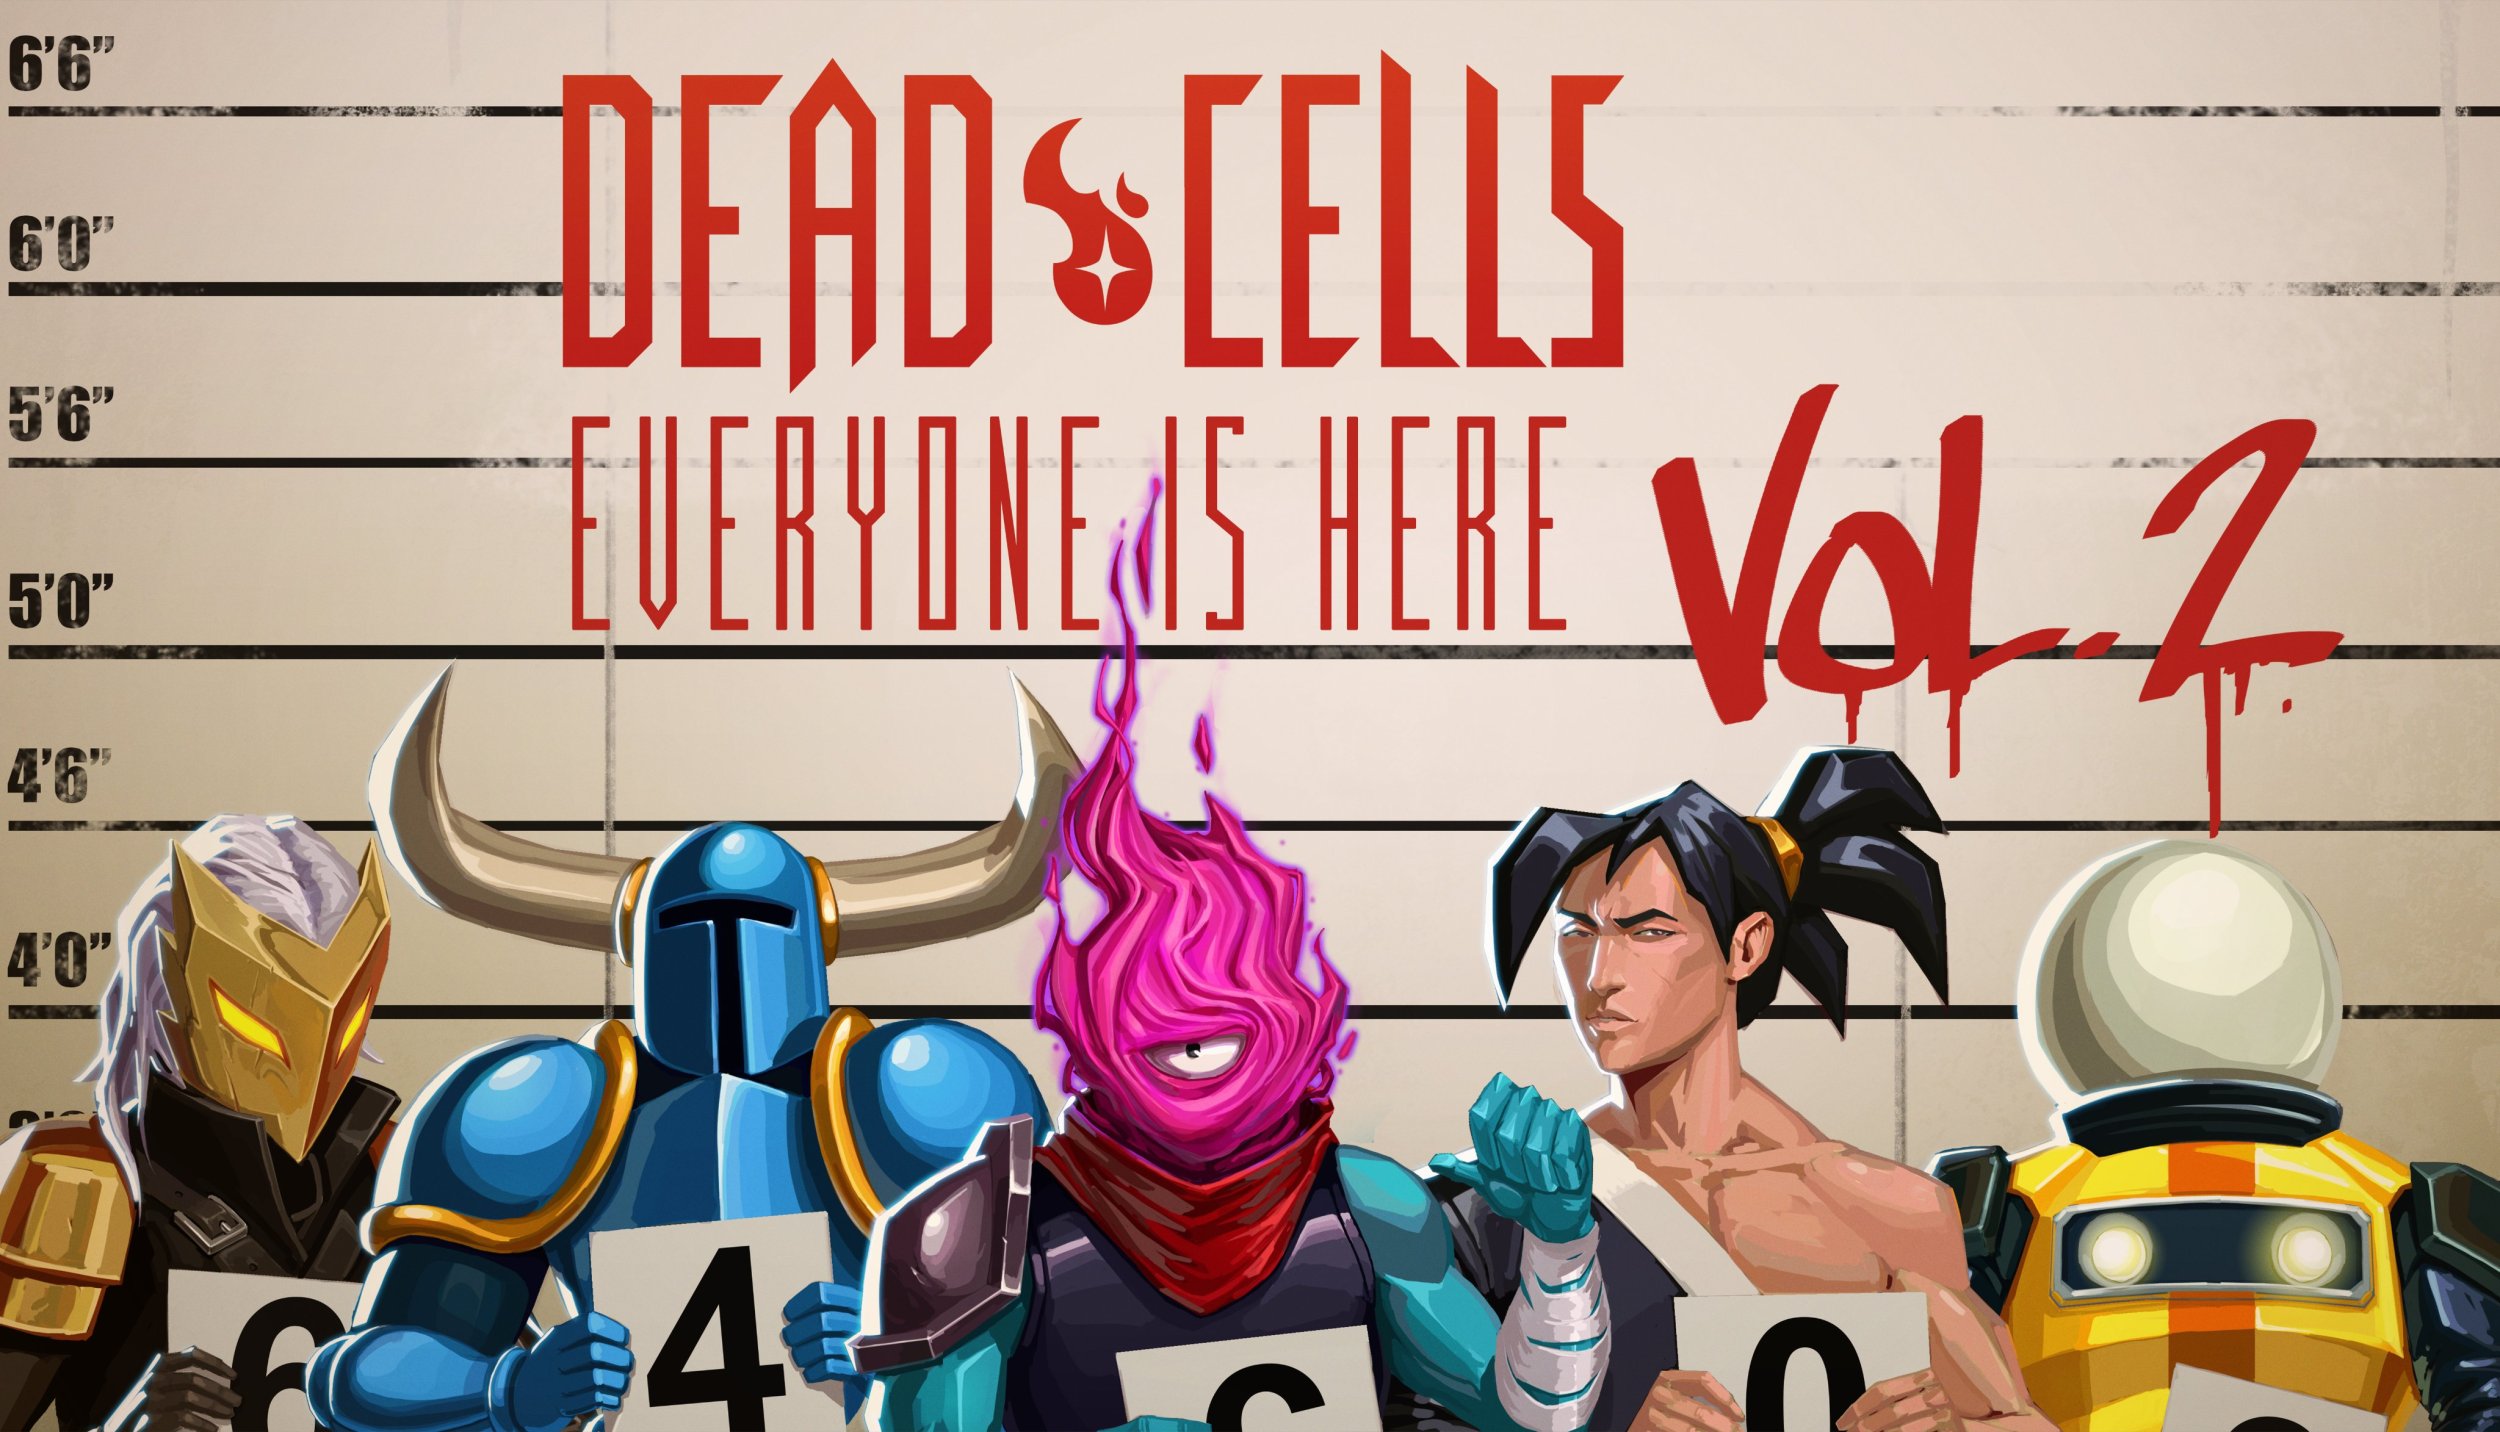 Dead Cells, Git Gud 2.36, Everyone Is Here Update Vol.2